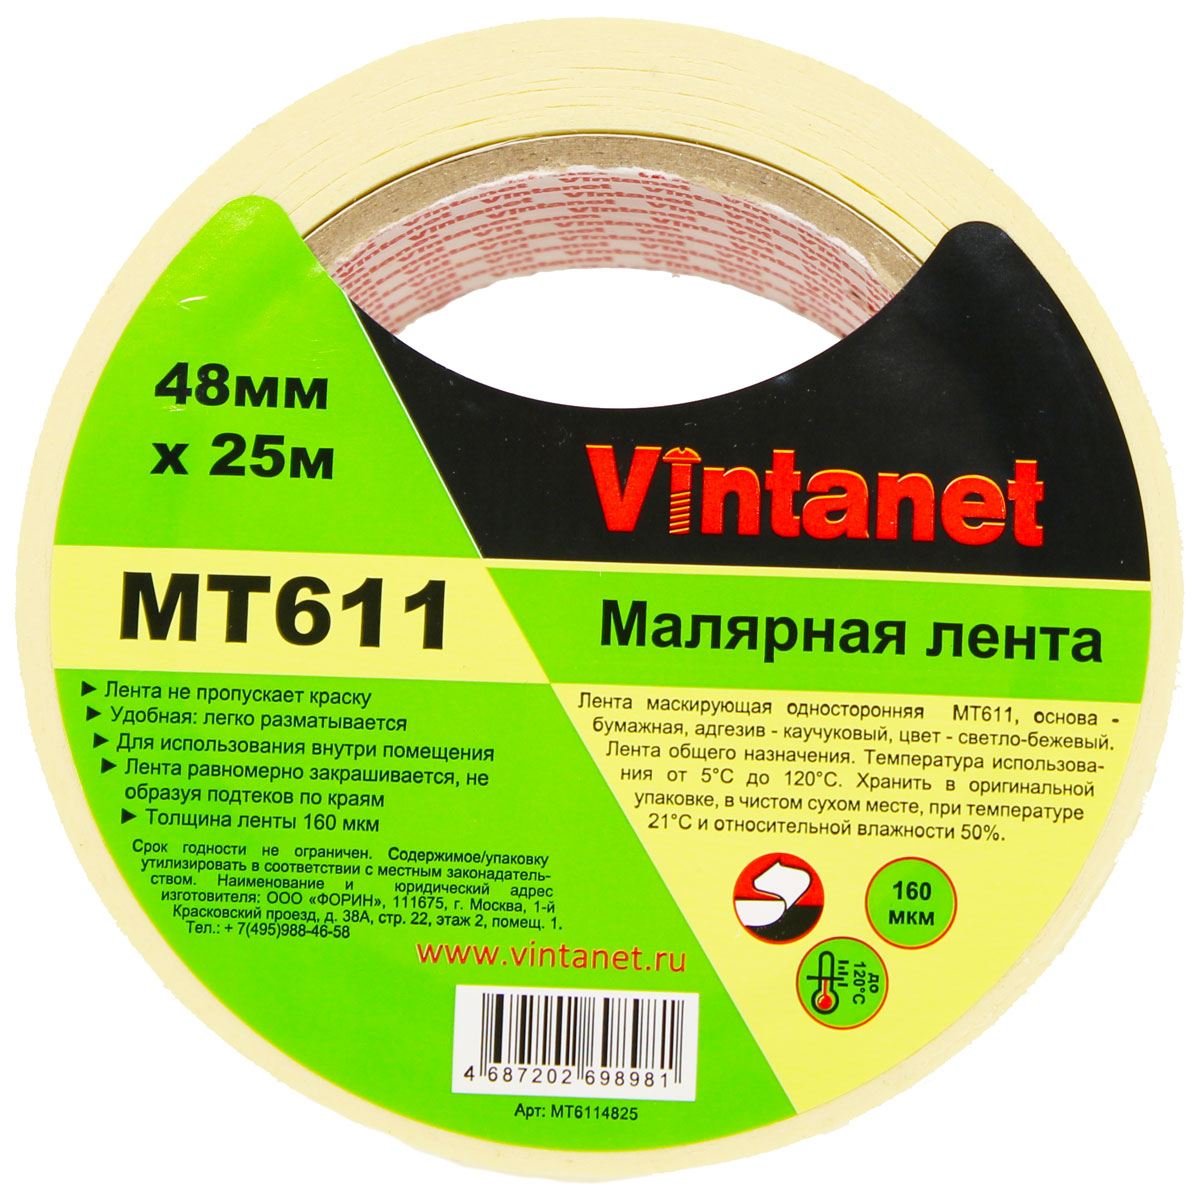 Лента малярная высокотемпературная Vintanet MT611, 120 С, 160 мкм, 48мм х 25м, MT6114825 малярная лента arch